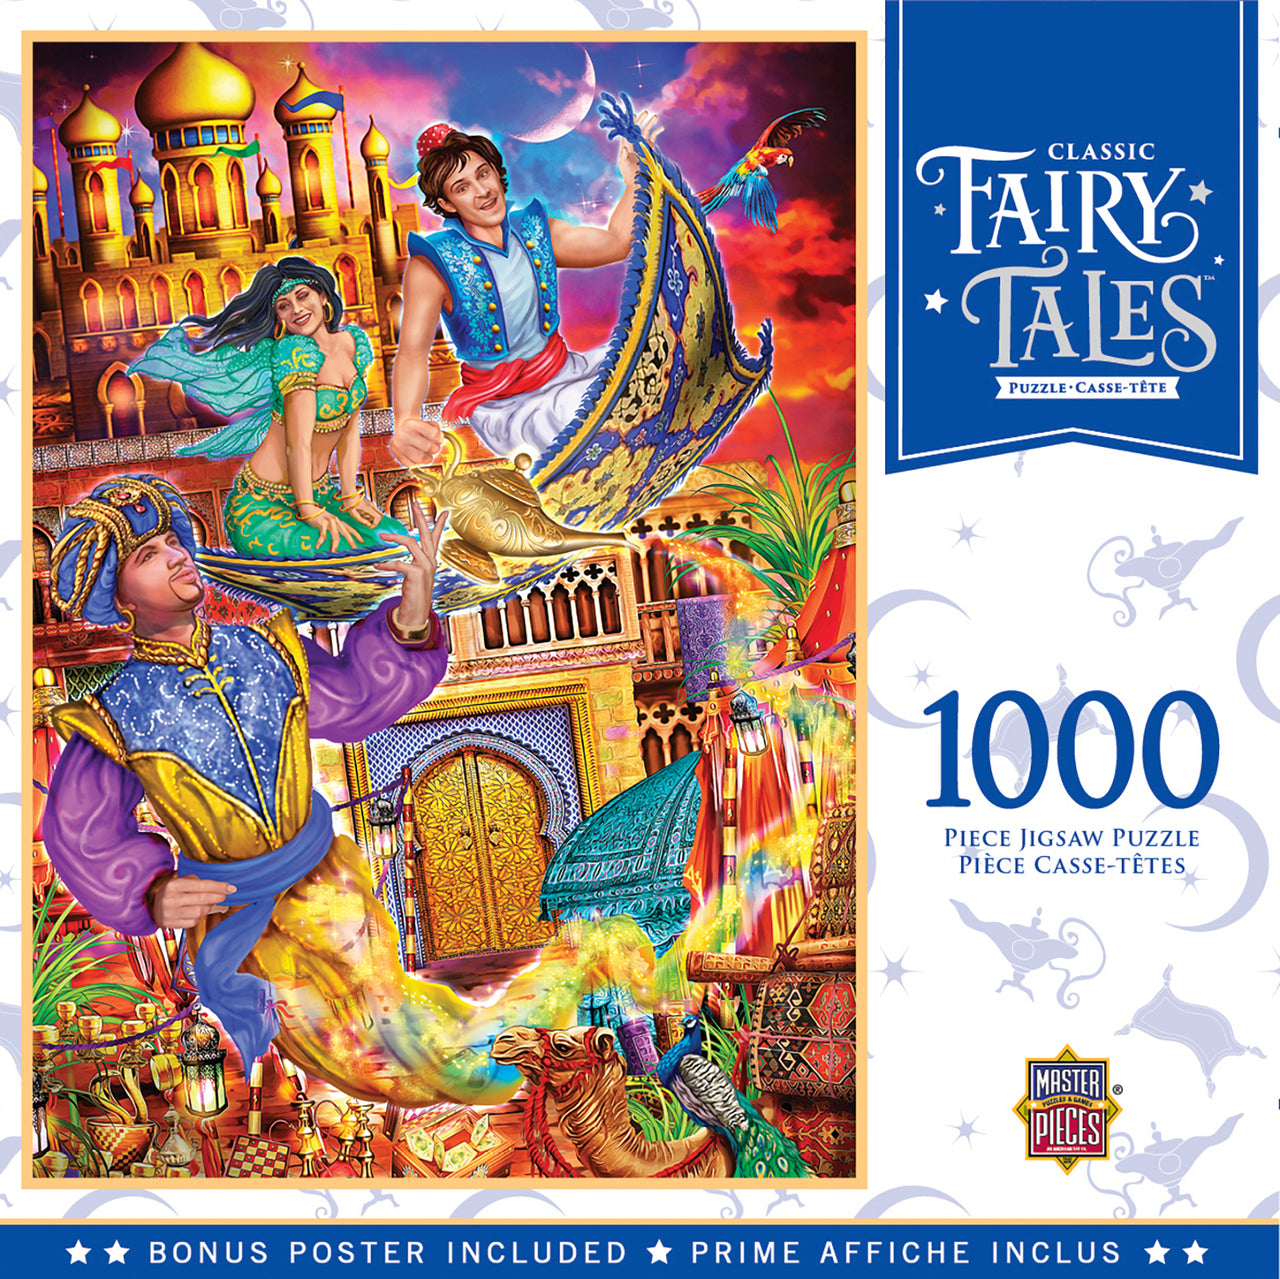 Classic Fairy Tales Aladdin by Ciro Marchetti, 1000 Piece Puzzle